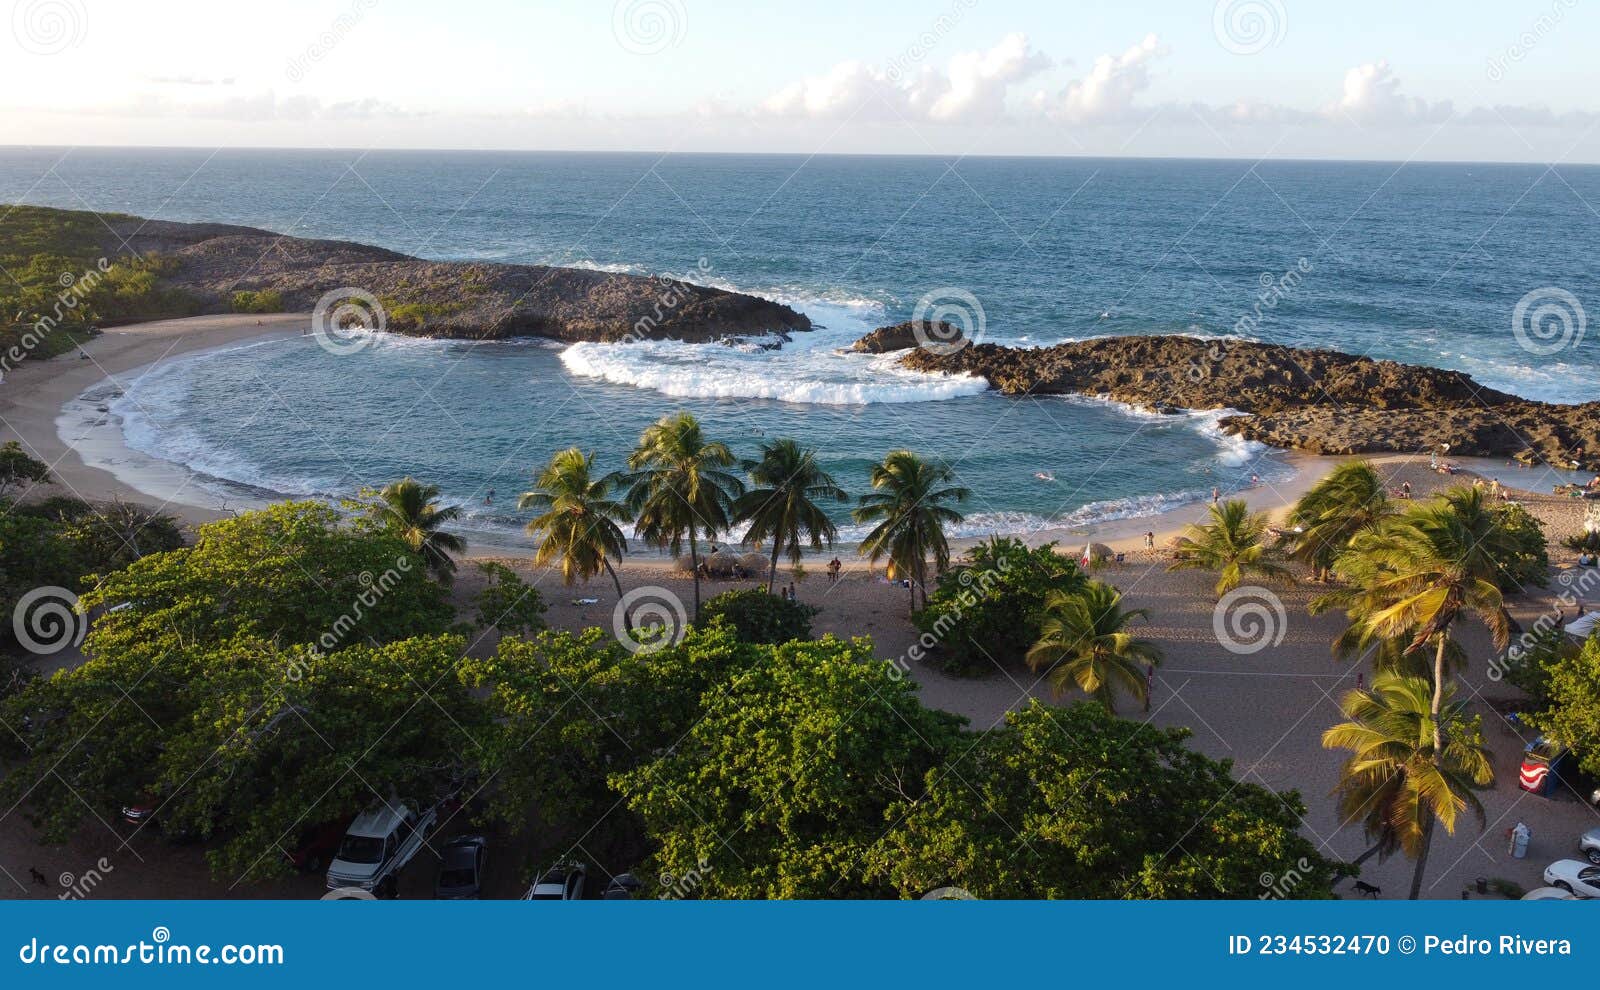 paisaje de una piscina natural llamada mar chiquita en puerto rico